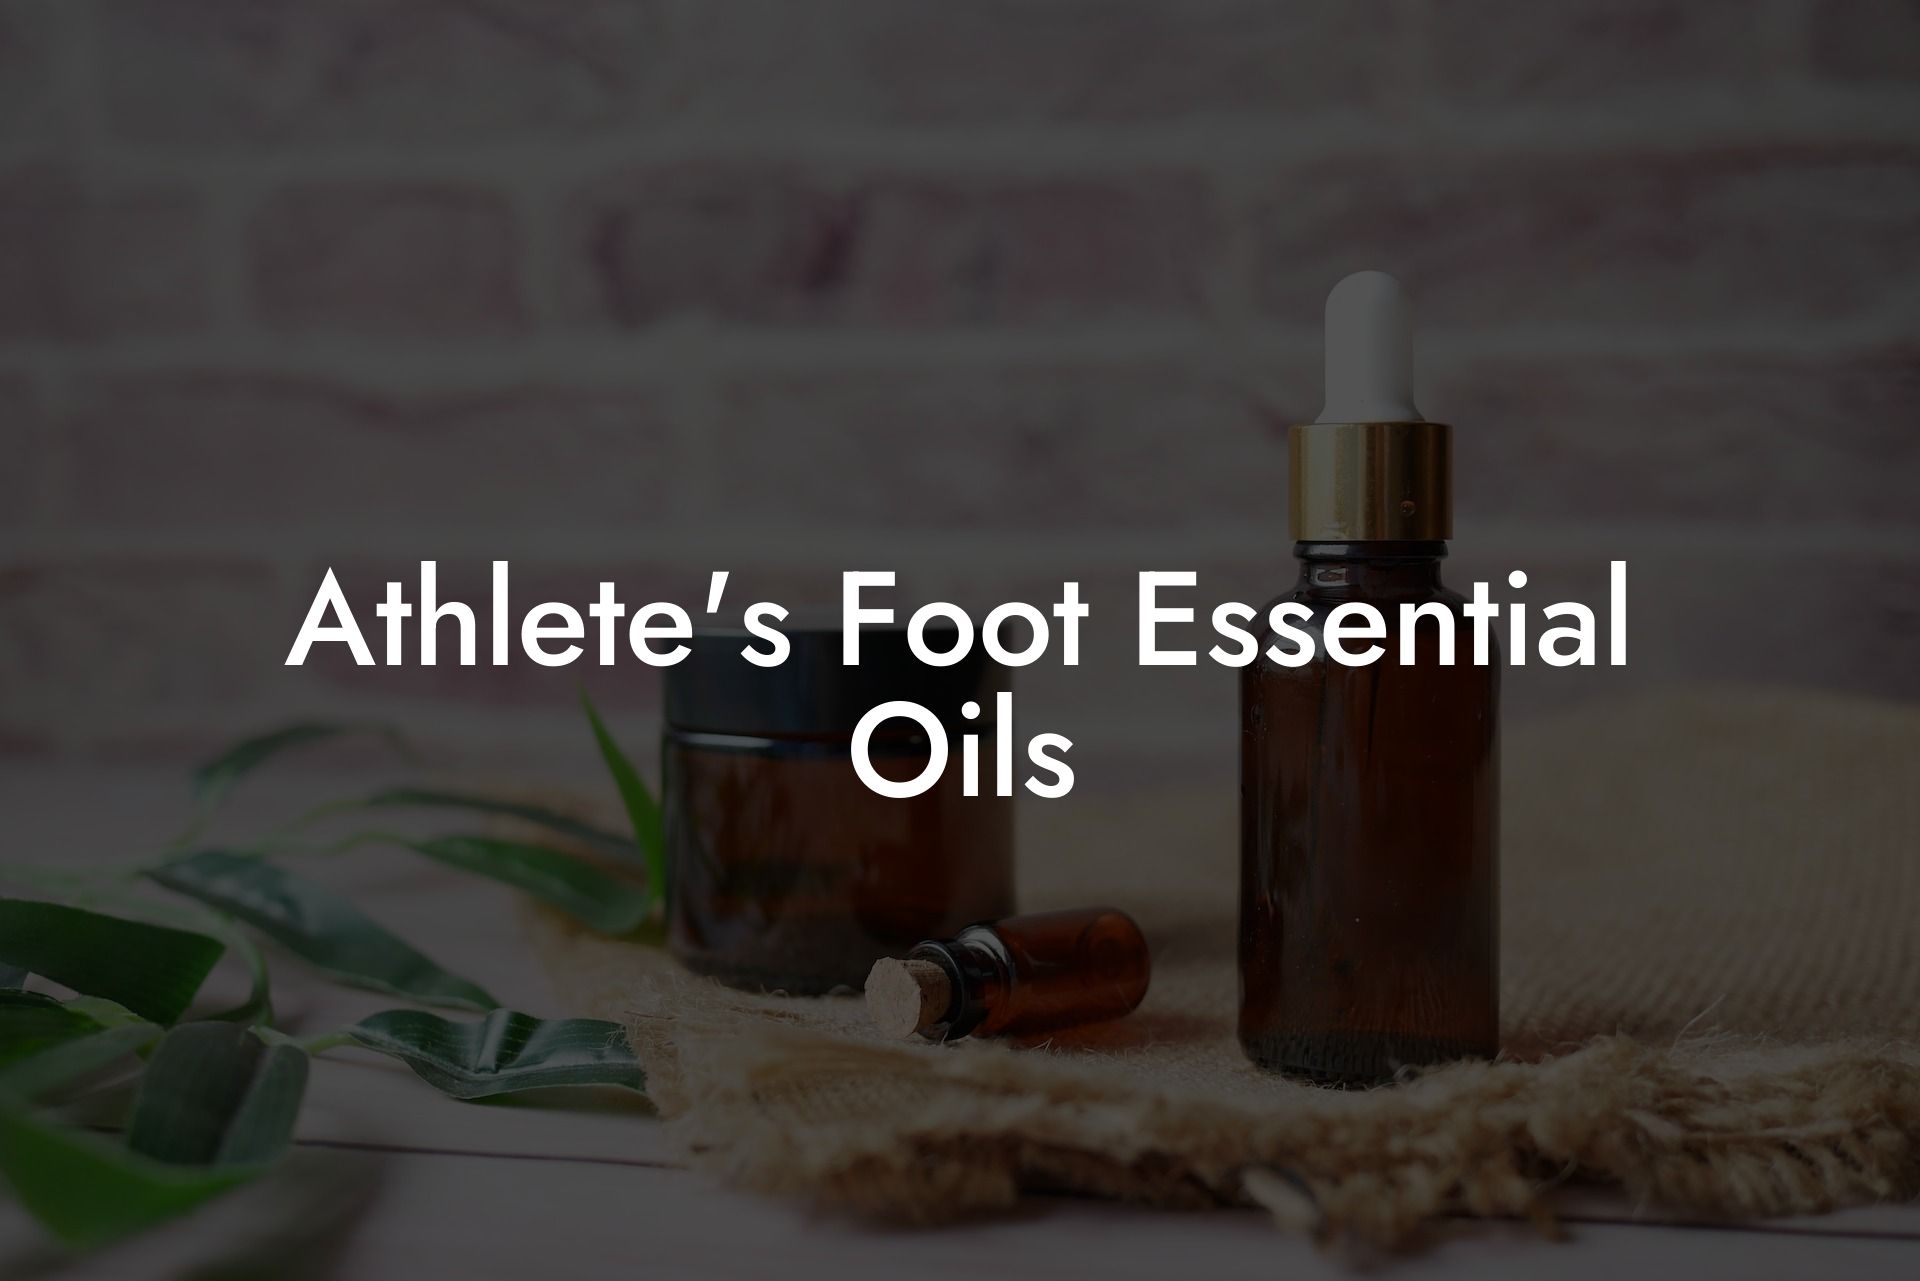 Athlete's Foot Essential Oils